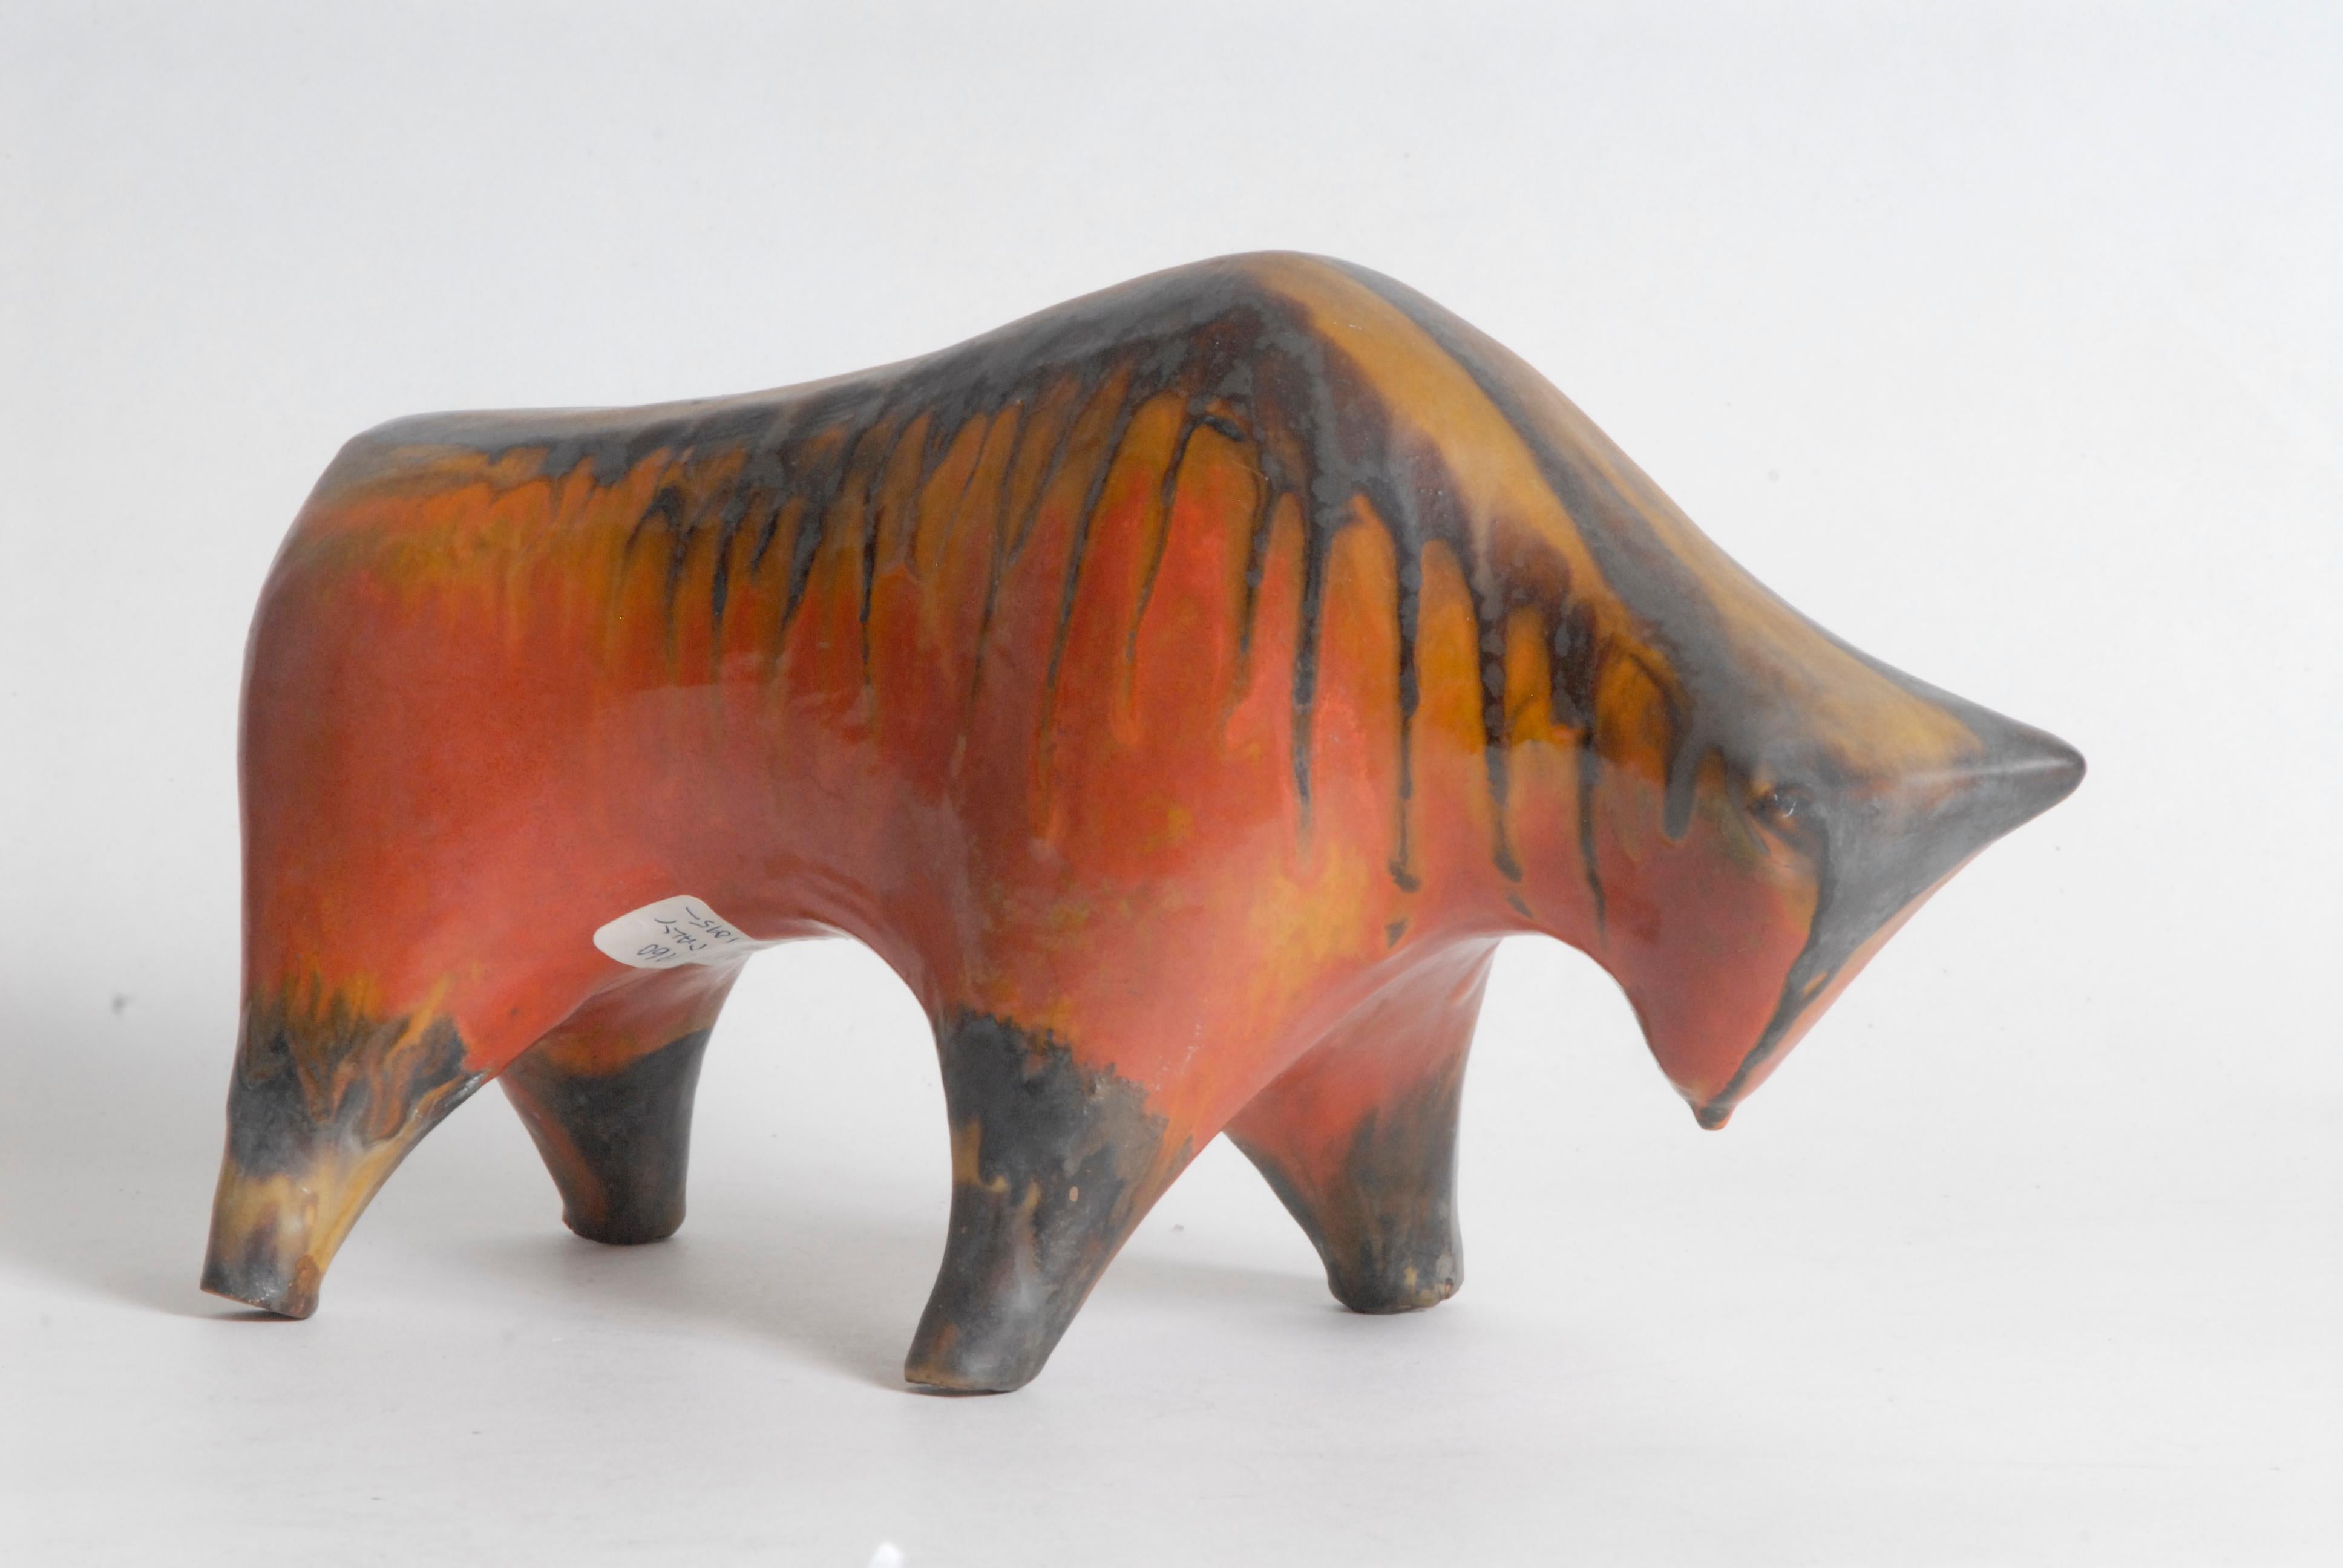 Un taureau en train de charger, très stylisé, de couleur orange et marron, typique des motifs italiens du milieu du siècle dernier créés par Bagni.